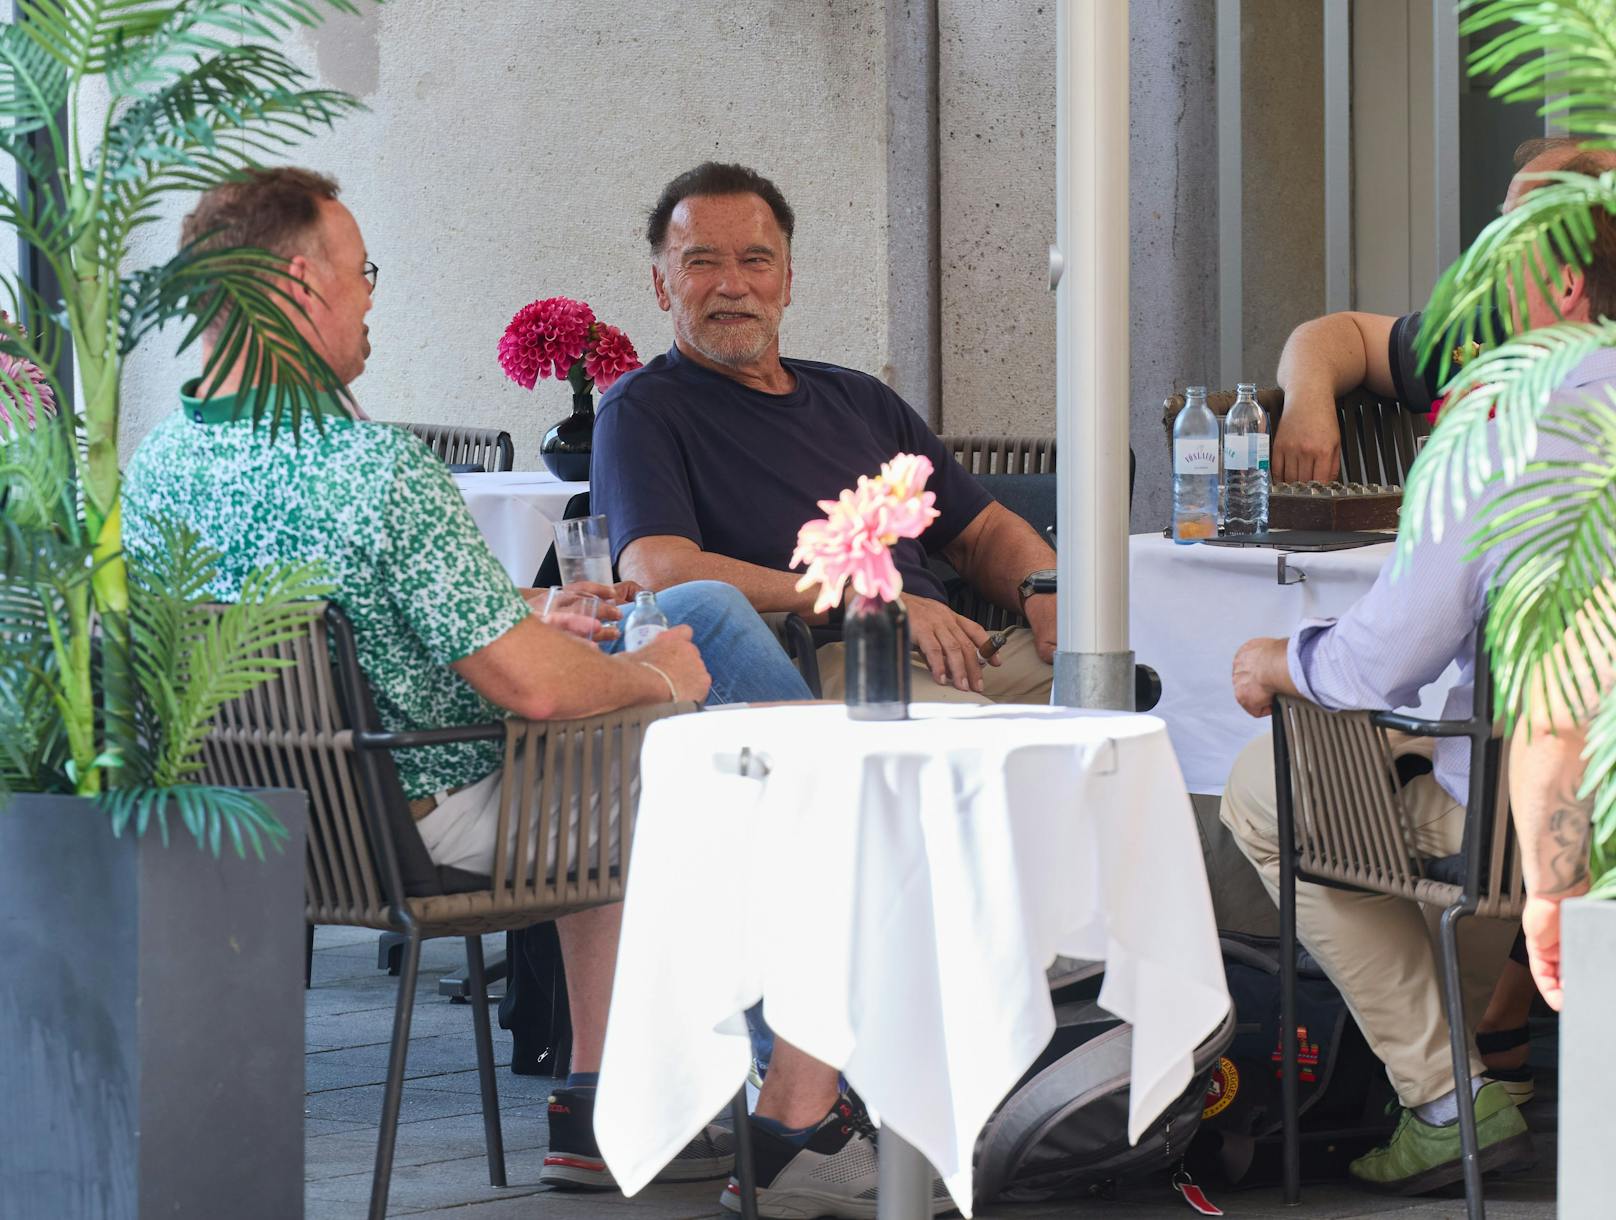 Arnie mischt sich im Café des Hotels unter die Gäste. In der Hand wieder eine Zigarre.